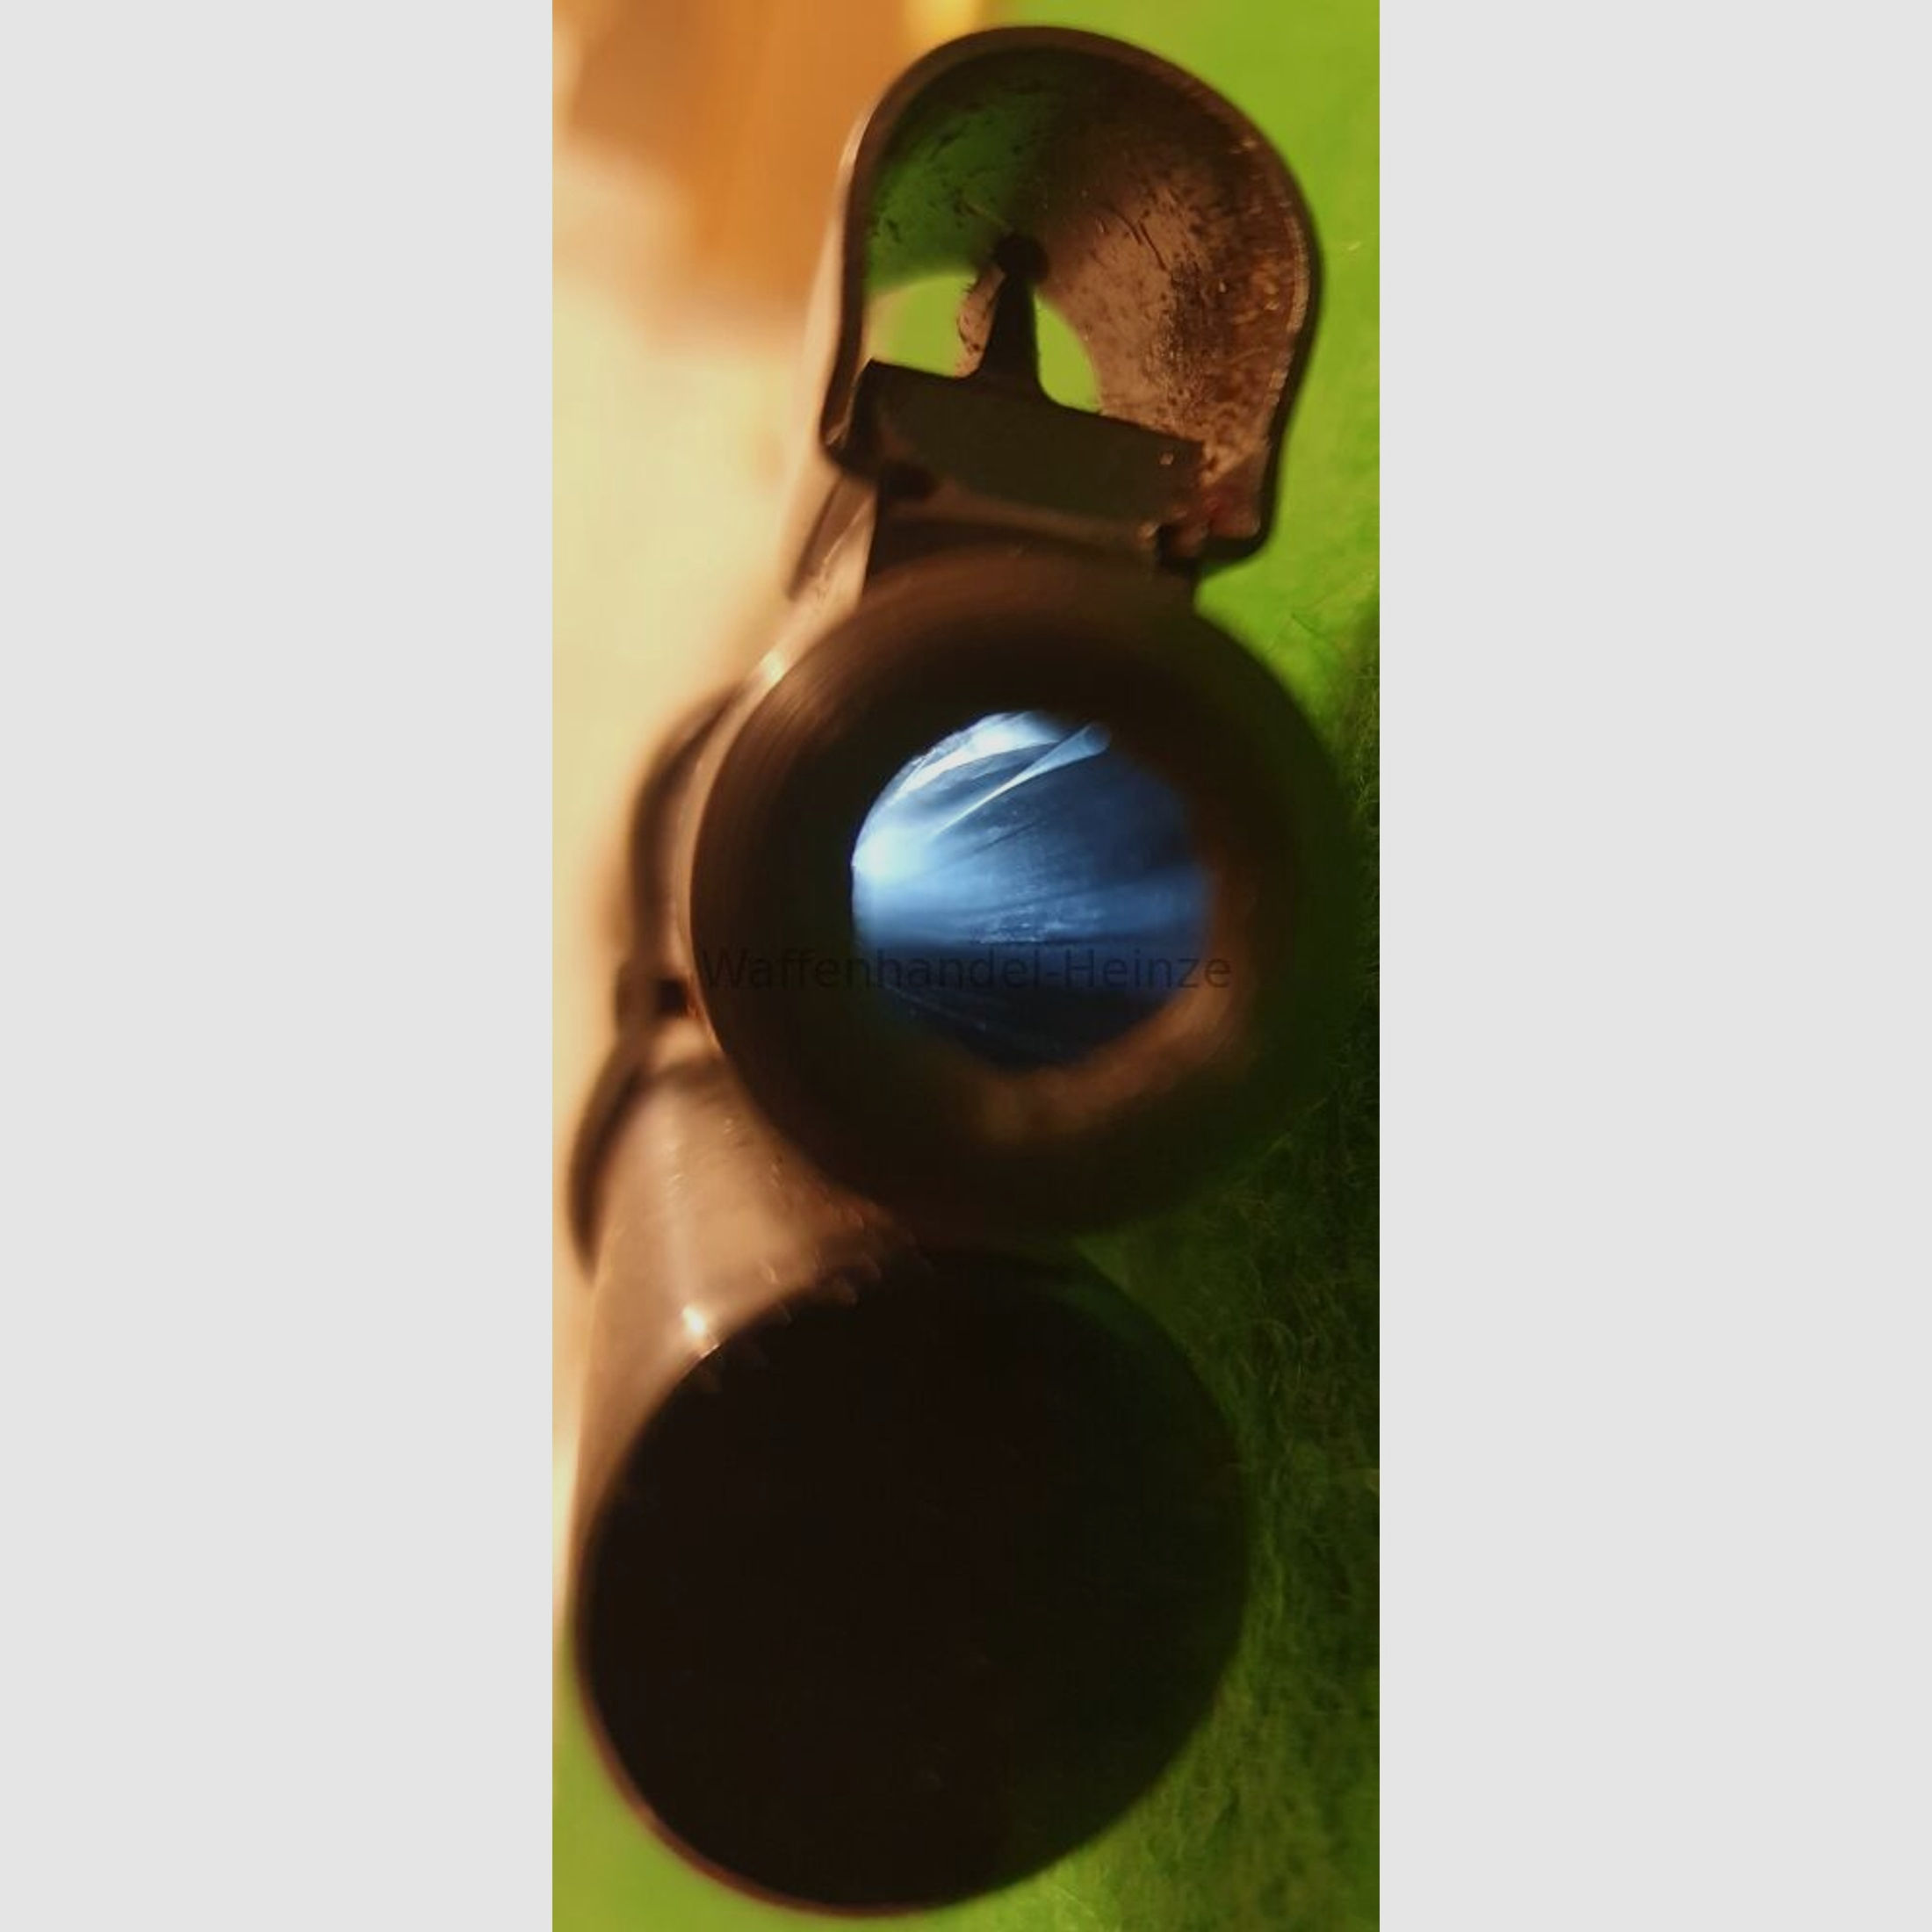 Winchester	 M94